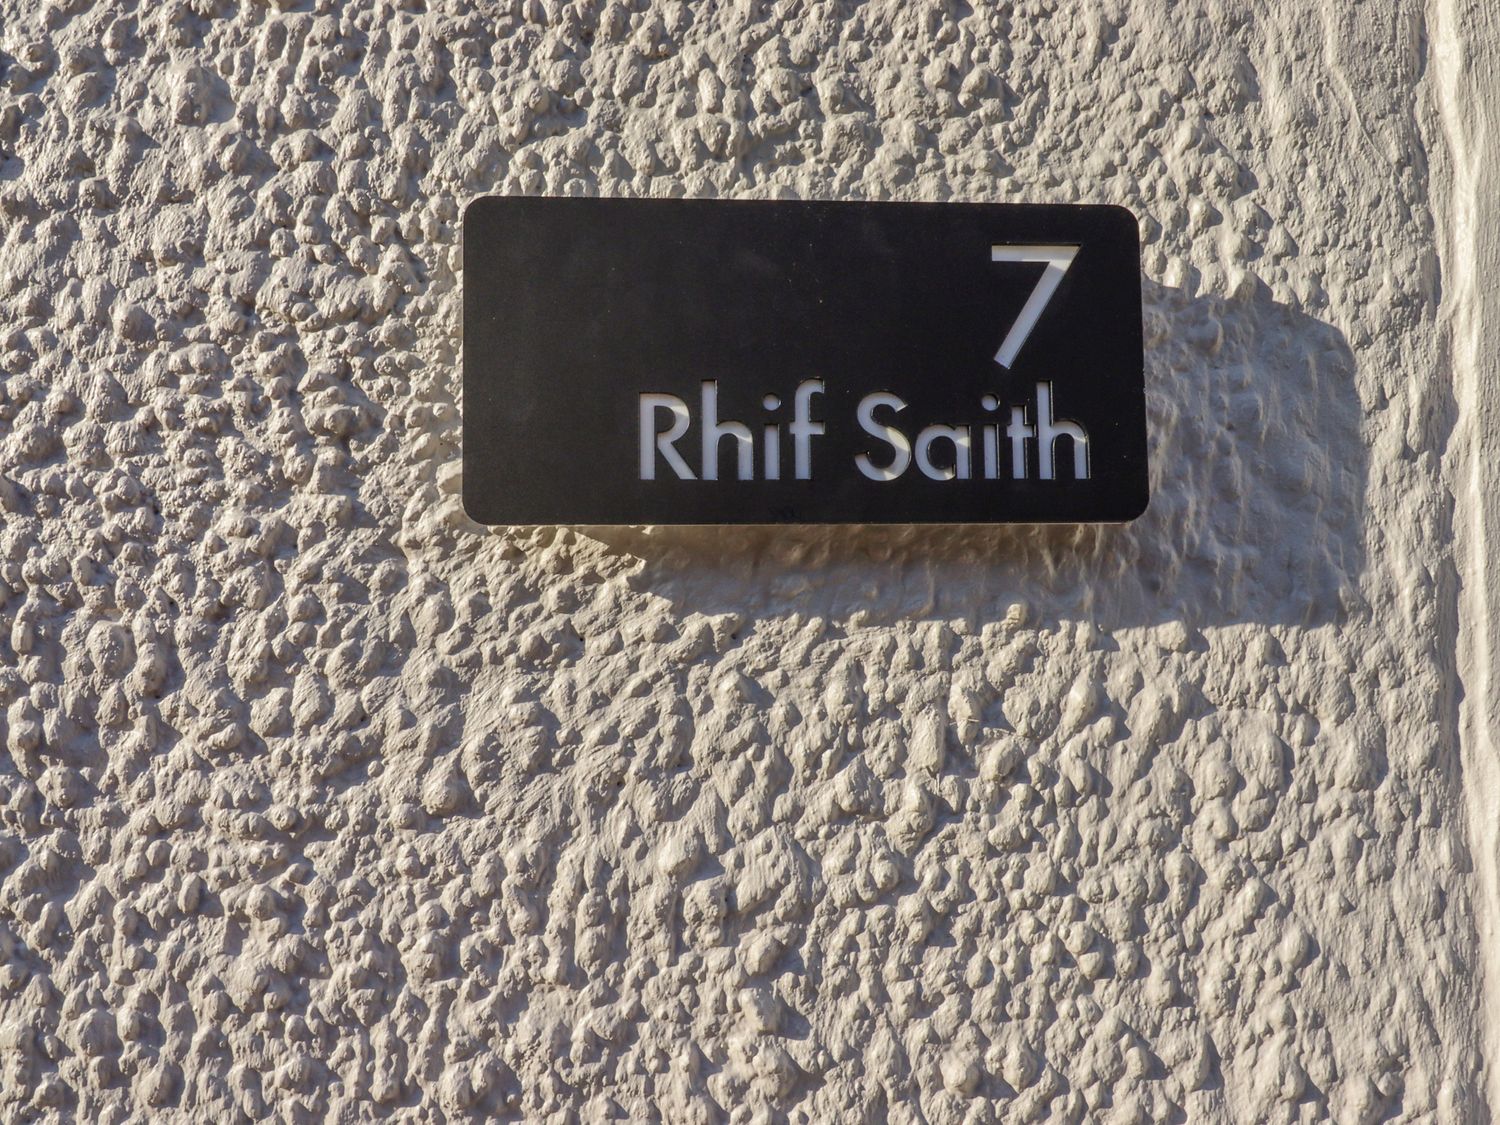 Rhif Saith, Ruthin